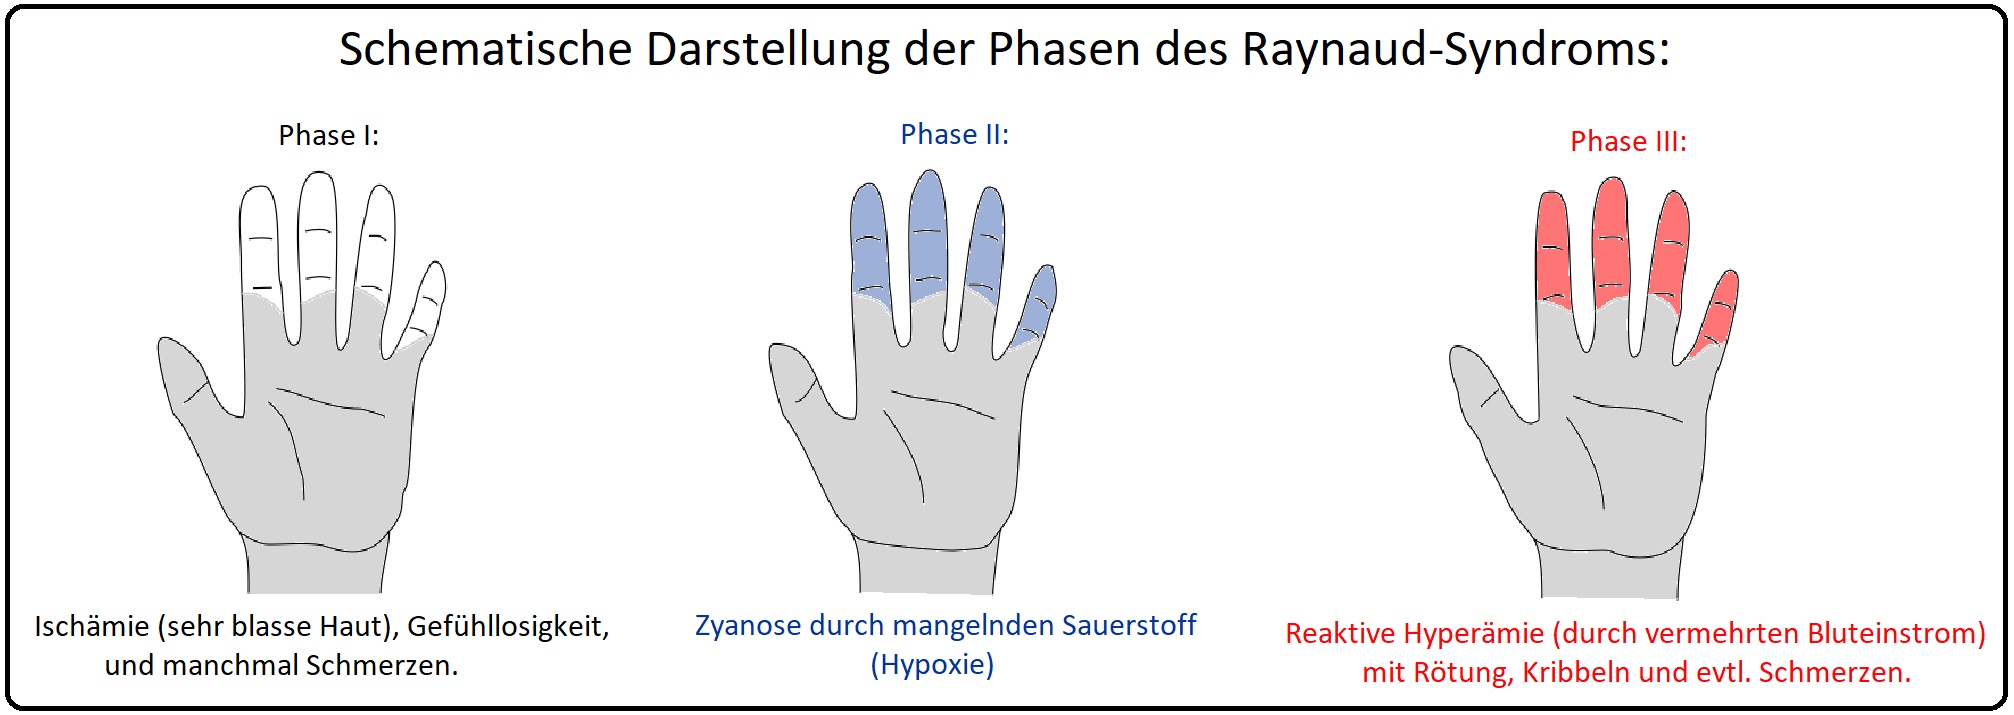 816 Schematische Darstellung der Phasen des Raynaud Syndroms